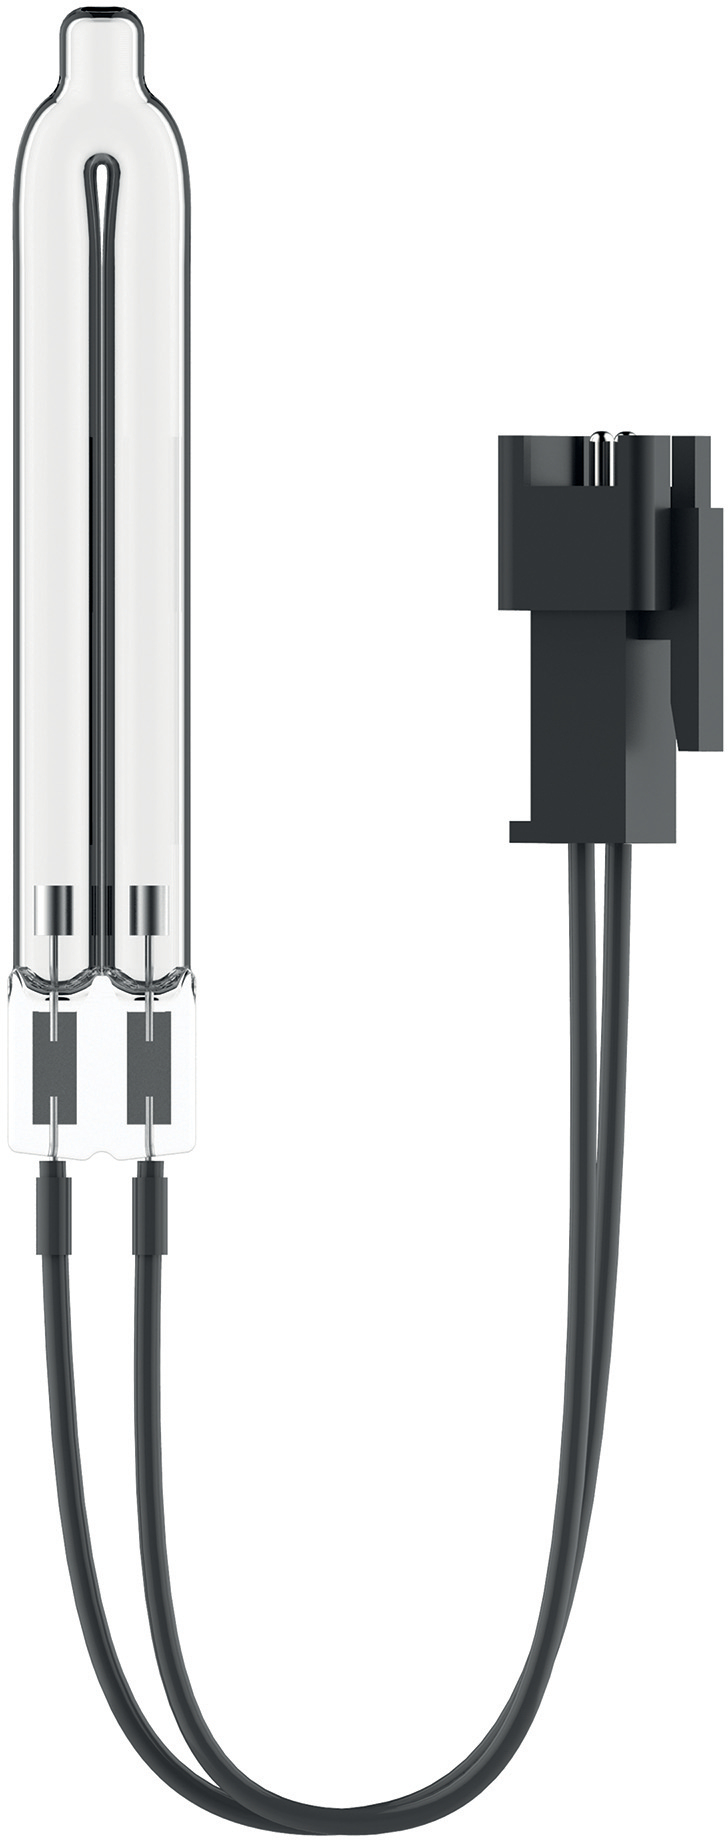 LEITZ Ampoule de remplacement UV-C 2415105 pour TruSens Z-1000